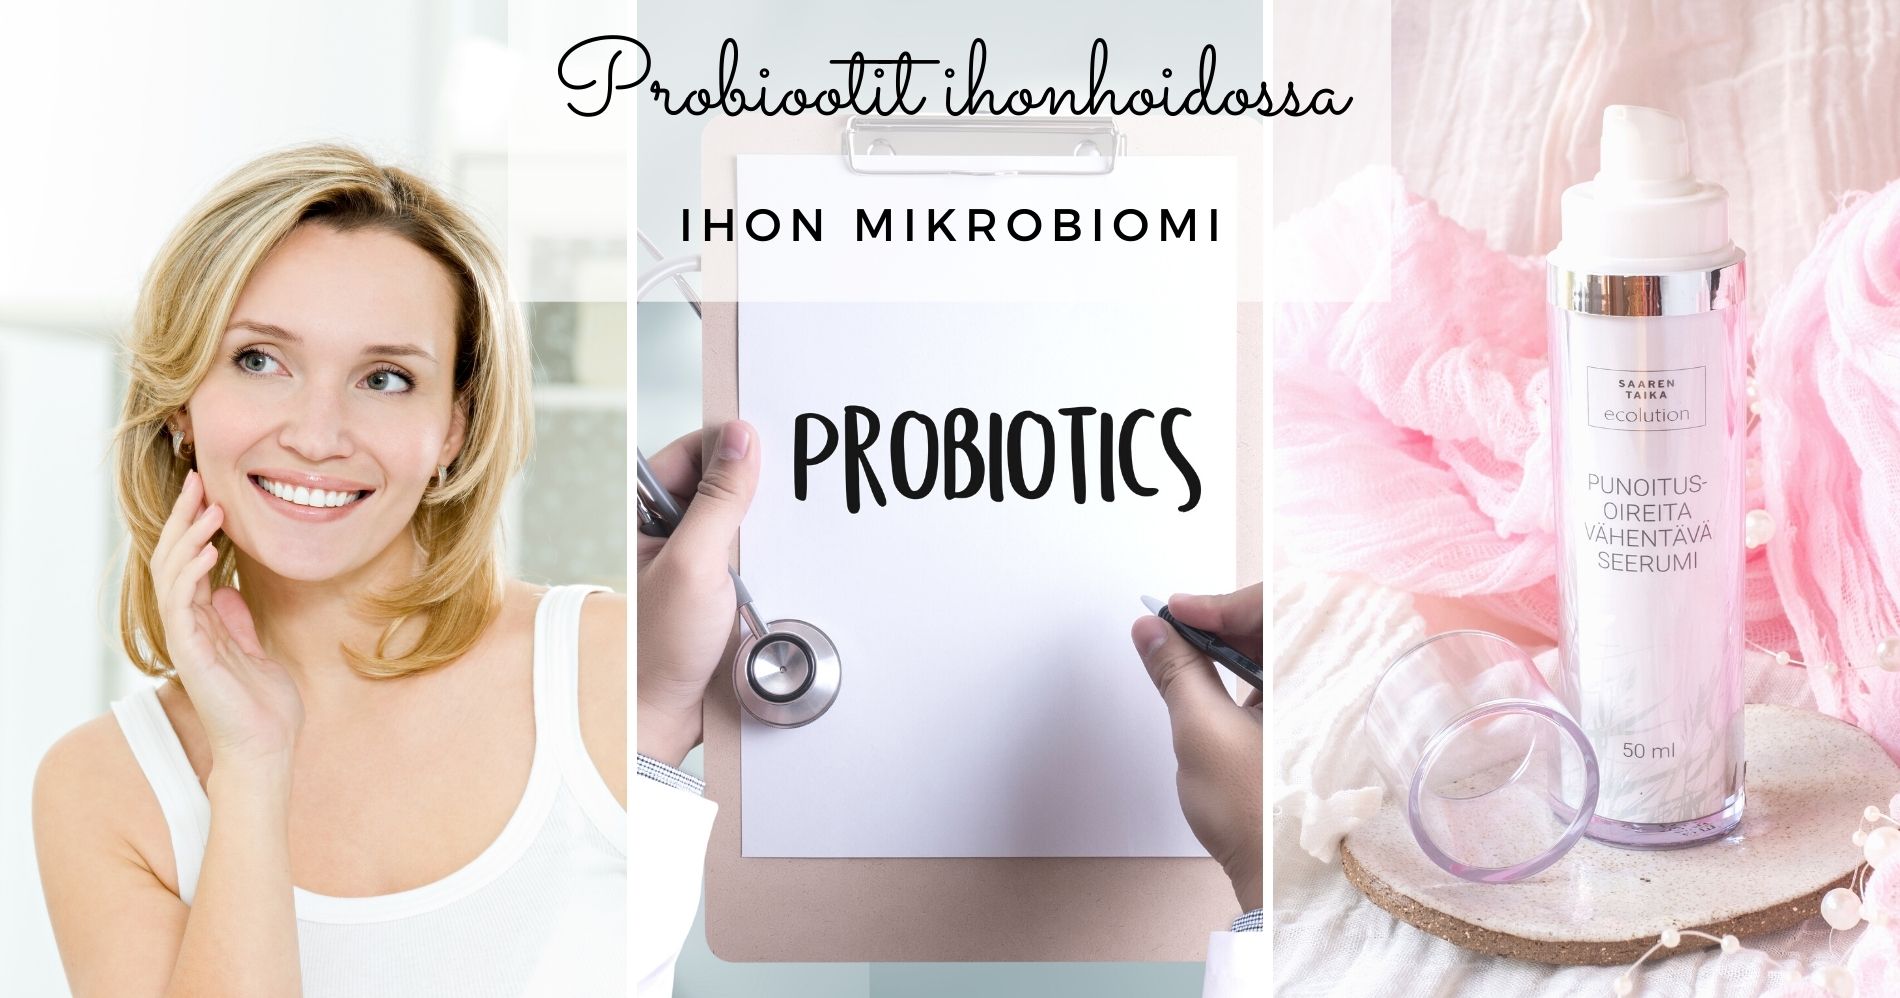 Probiootit ihonhoidossa - mitä tarkoittaa ihon mikrobiomi?